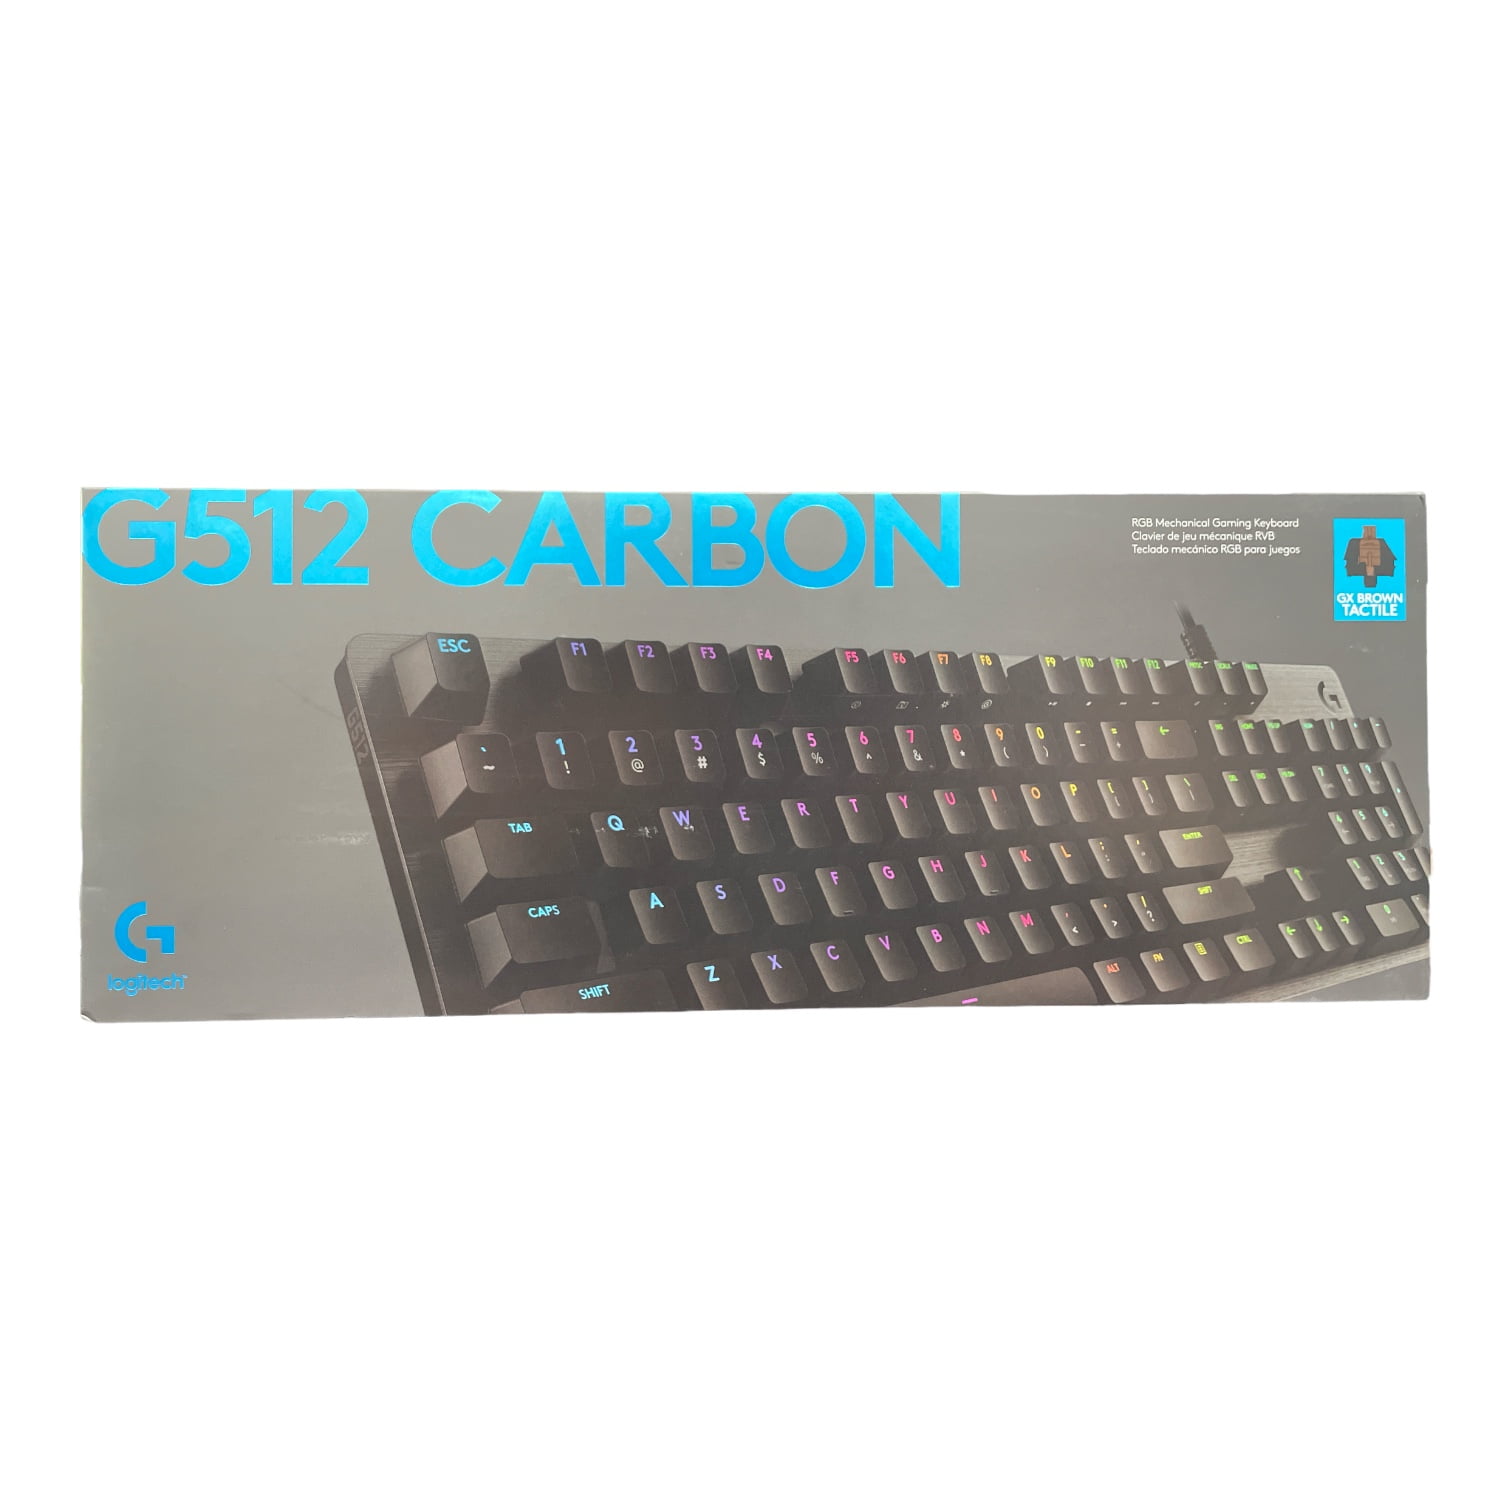 Anzai arkitekt løber tør Logitech G512 CARBON LIGHTSYNC RGB Mechanical Gaming Keyboard GXBrown  920-009840 - Walmart.com